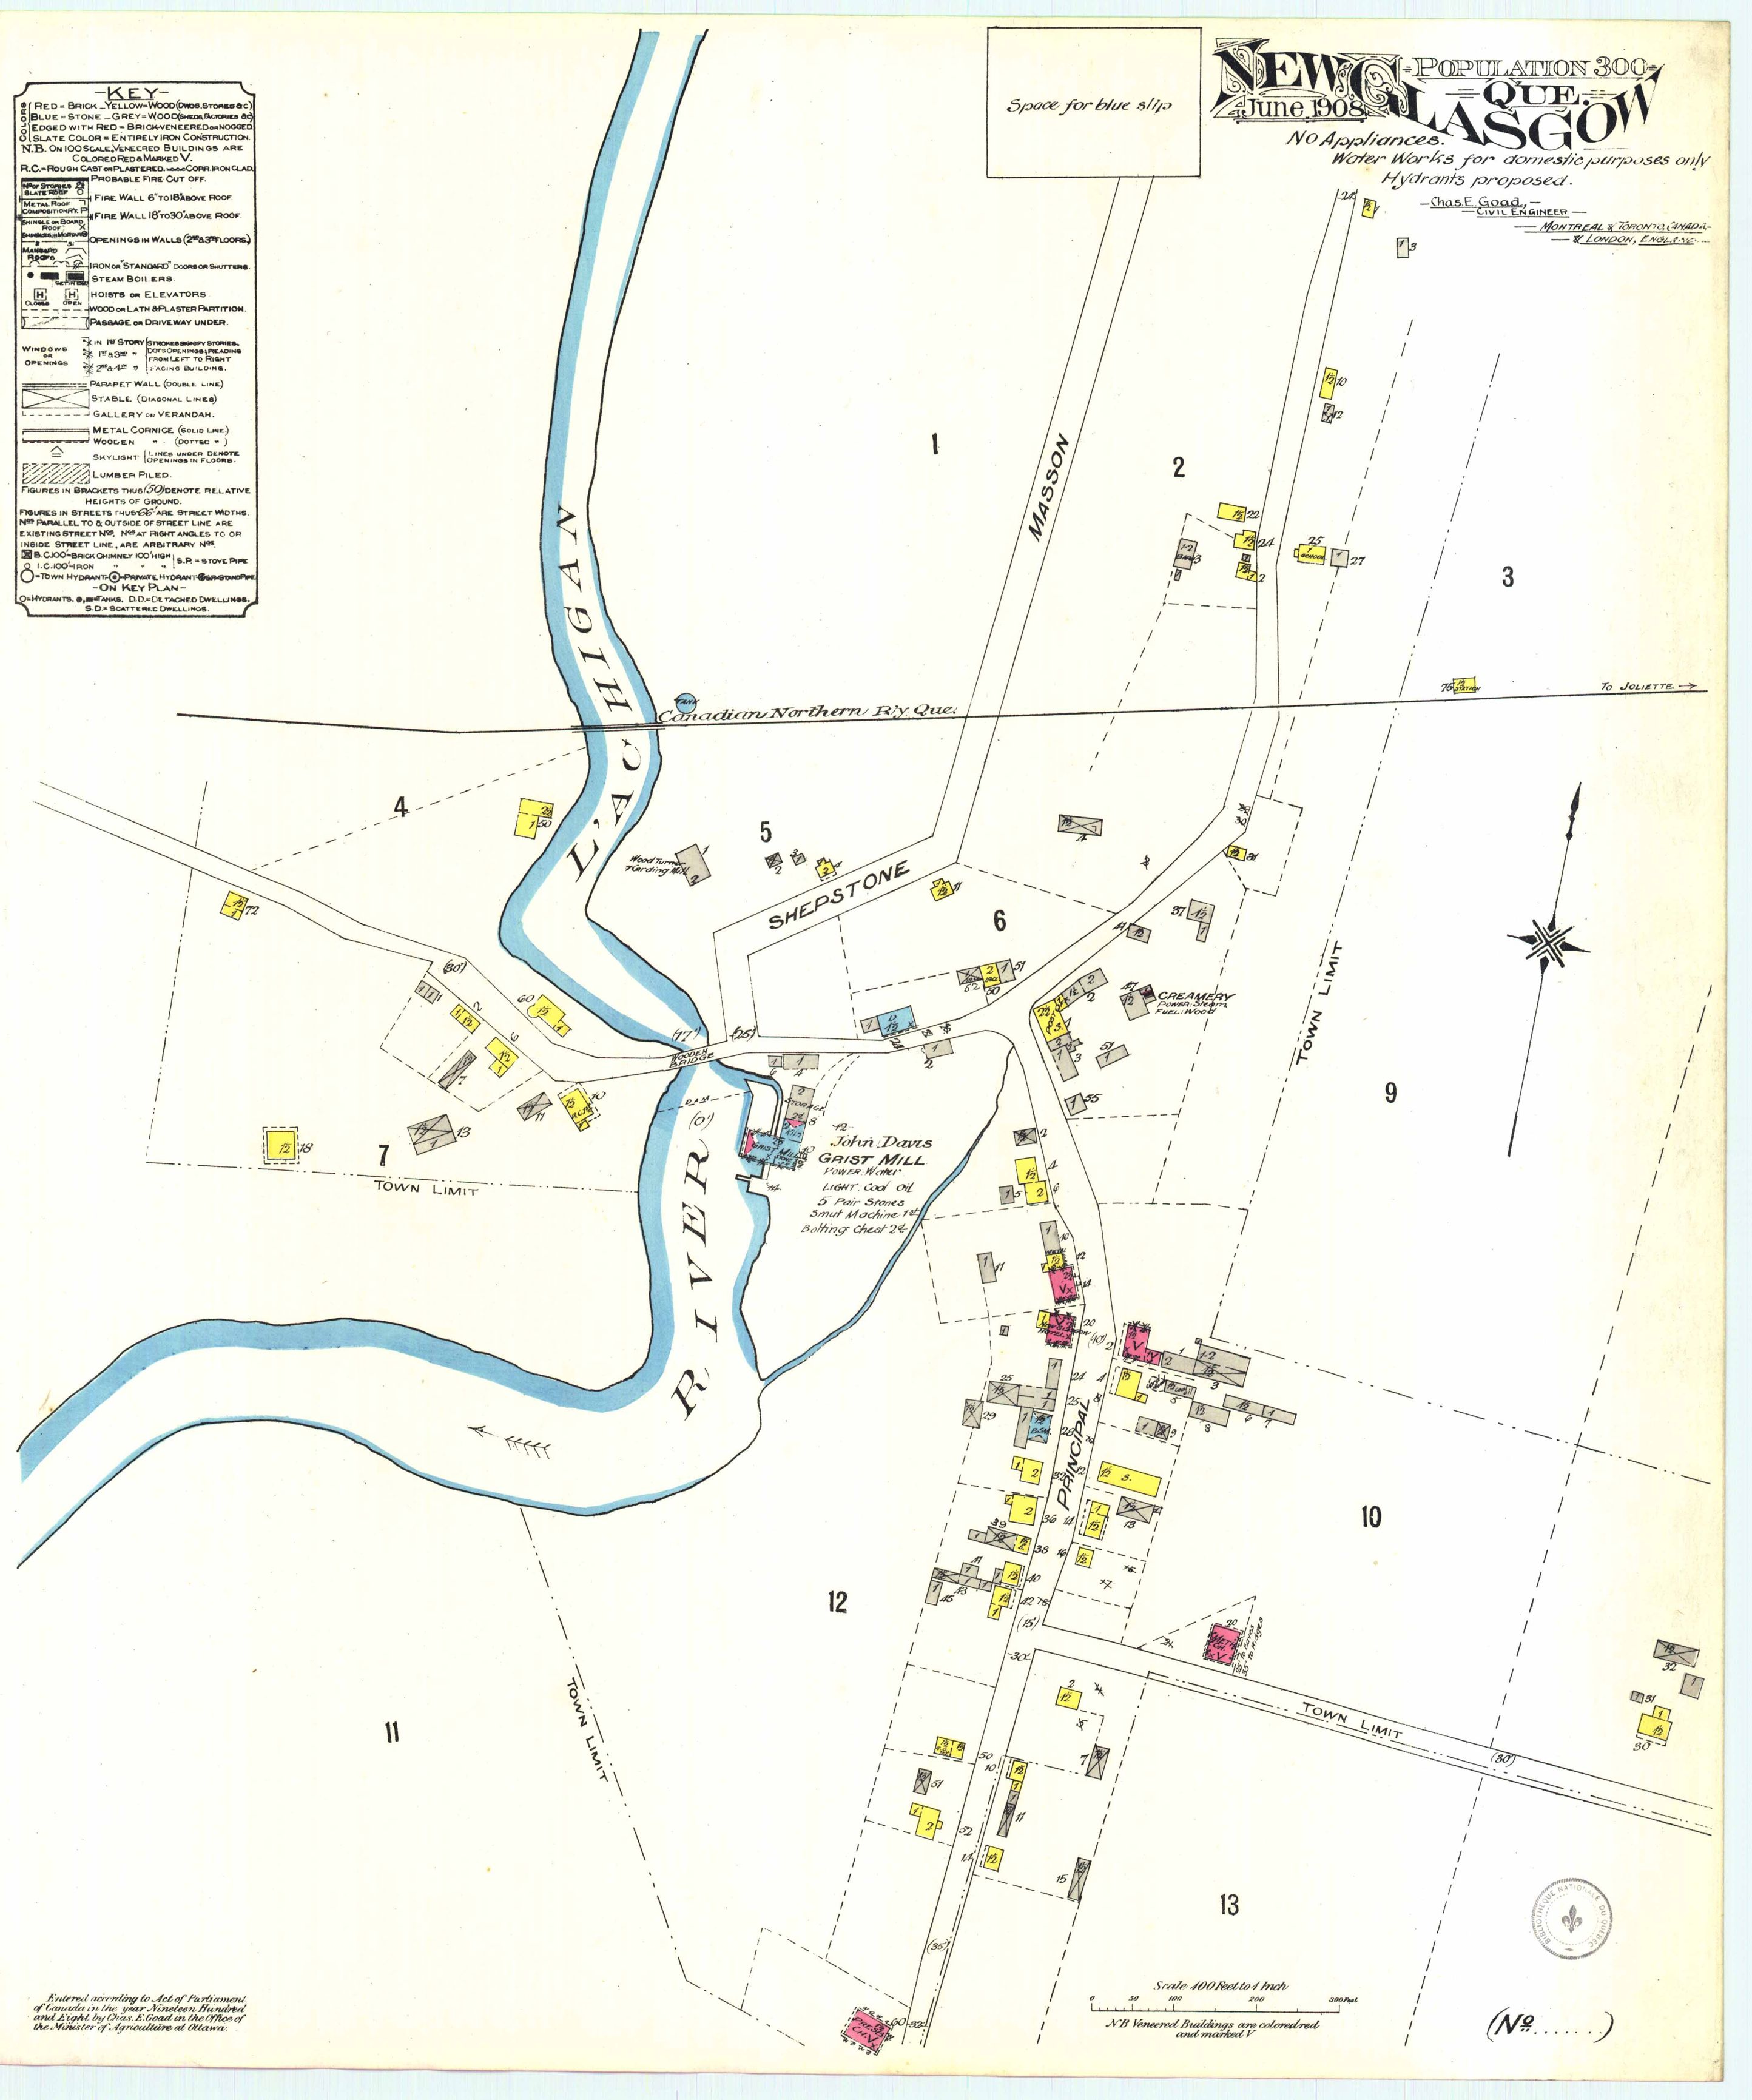 Carte géographique détaillée du village de New Glasgow